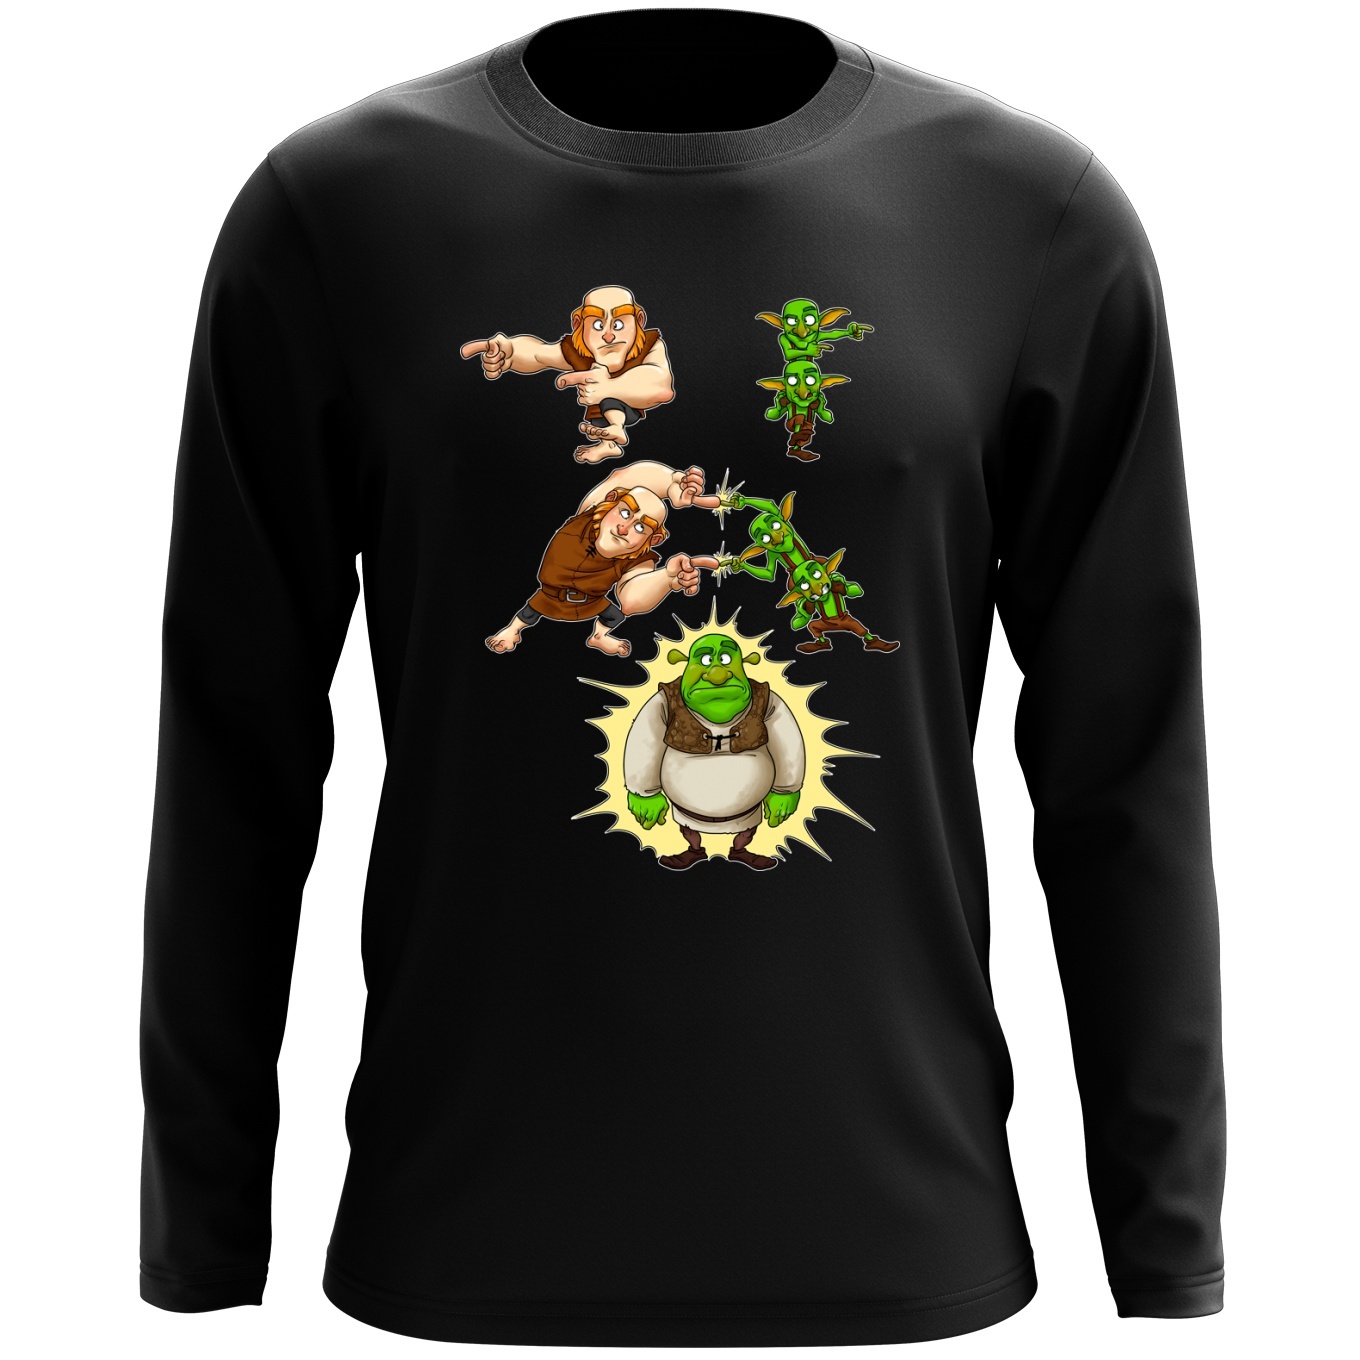 velstand efter det Ødelægge Clash Royale Parody Long sleeved T-shirt - Giant, Gobelins and Shrek (Funny Clash  Royale Parody - High Quality T-shirt - Size 894 - Ref : 894)